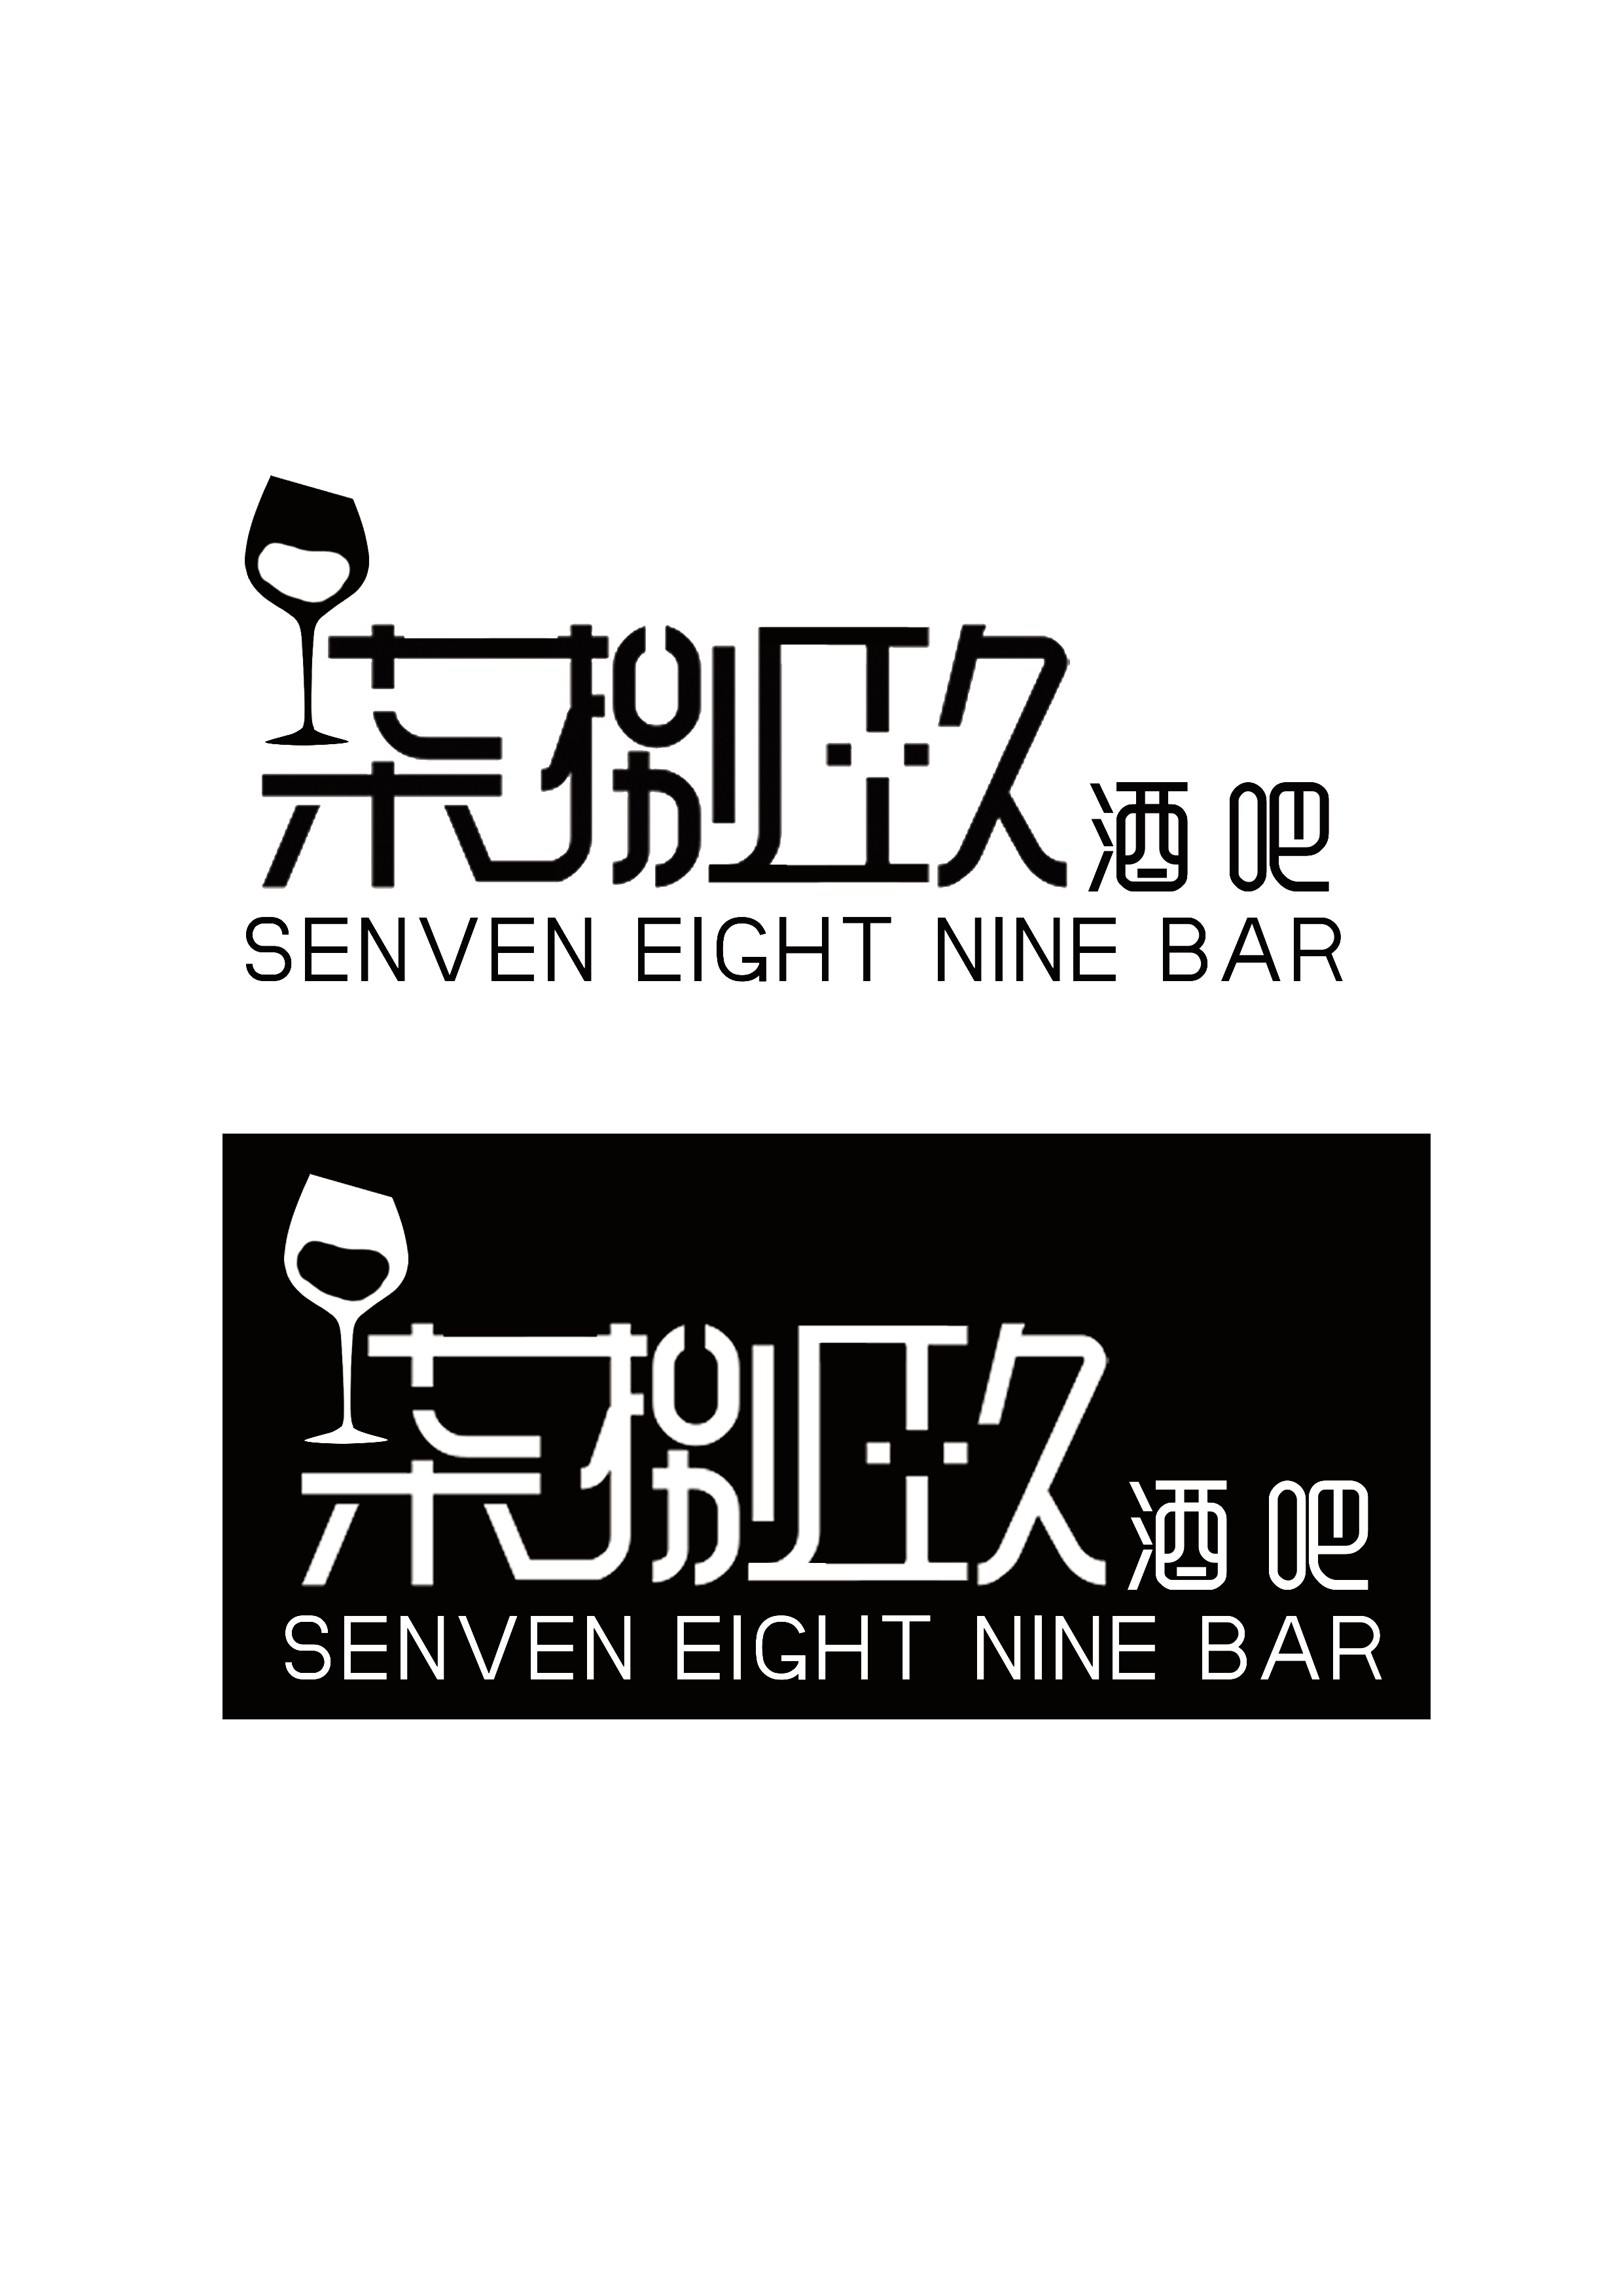 酒吧logo设计图片欣赏图片